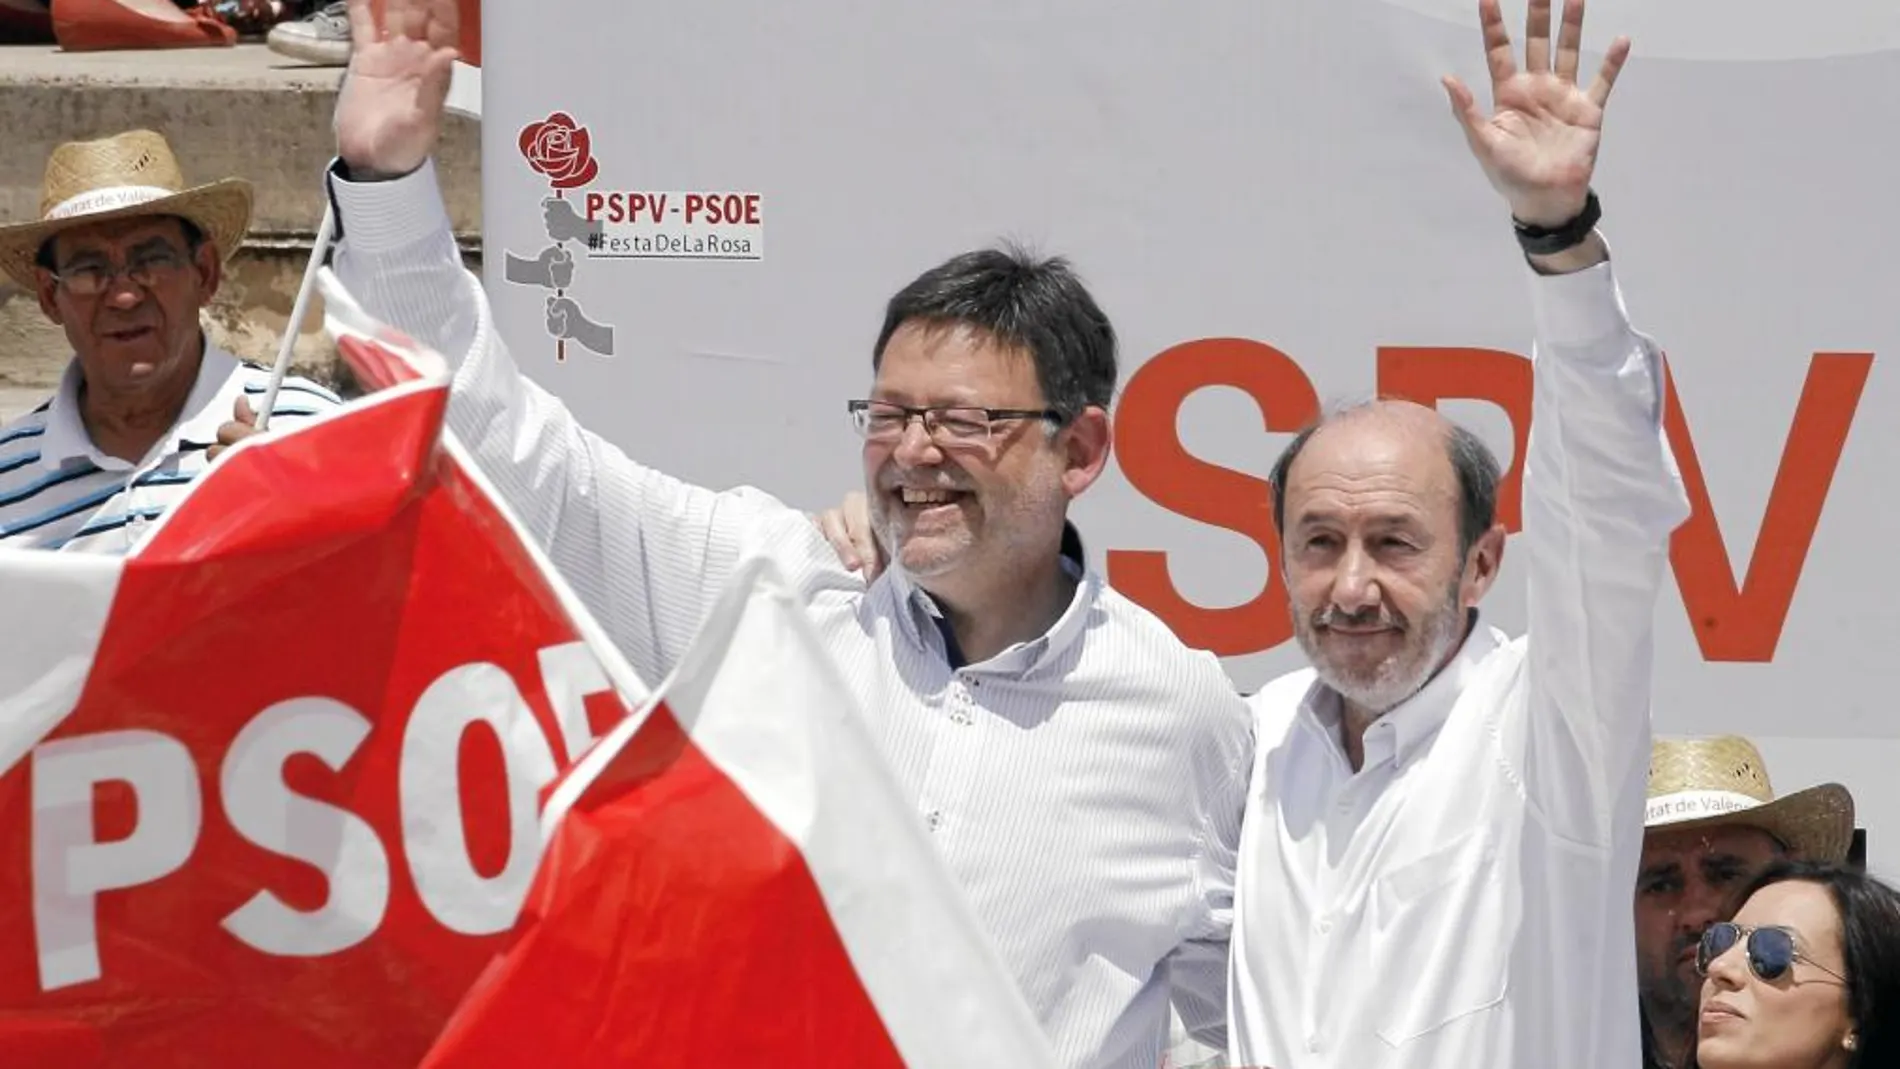 Fin de semana de líderes. El sábado Rajoy acompañó a los populares, ayer Rubalcaba asistió en Valencia a la Fiesta de la Rosa